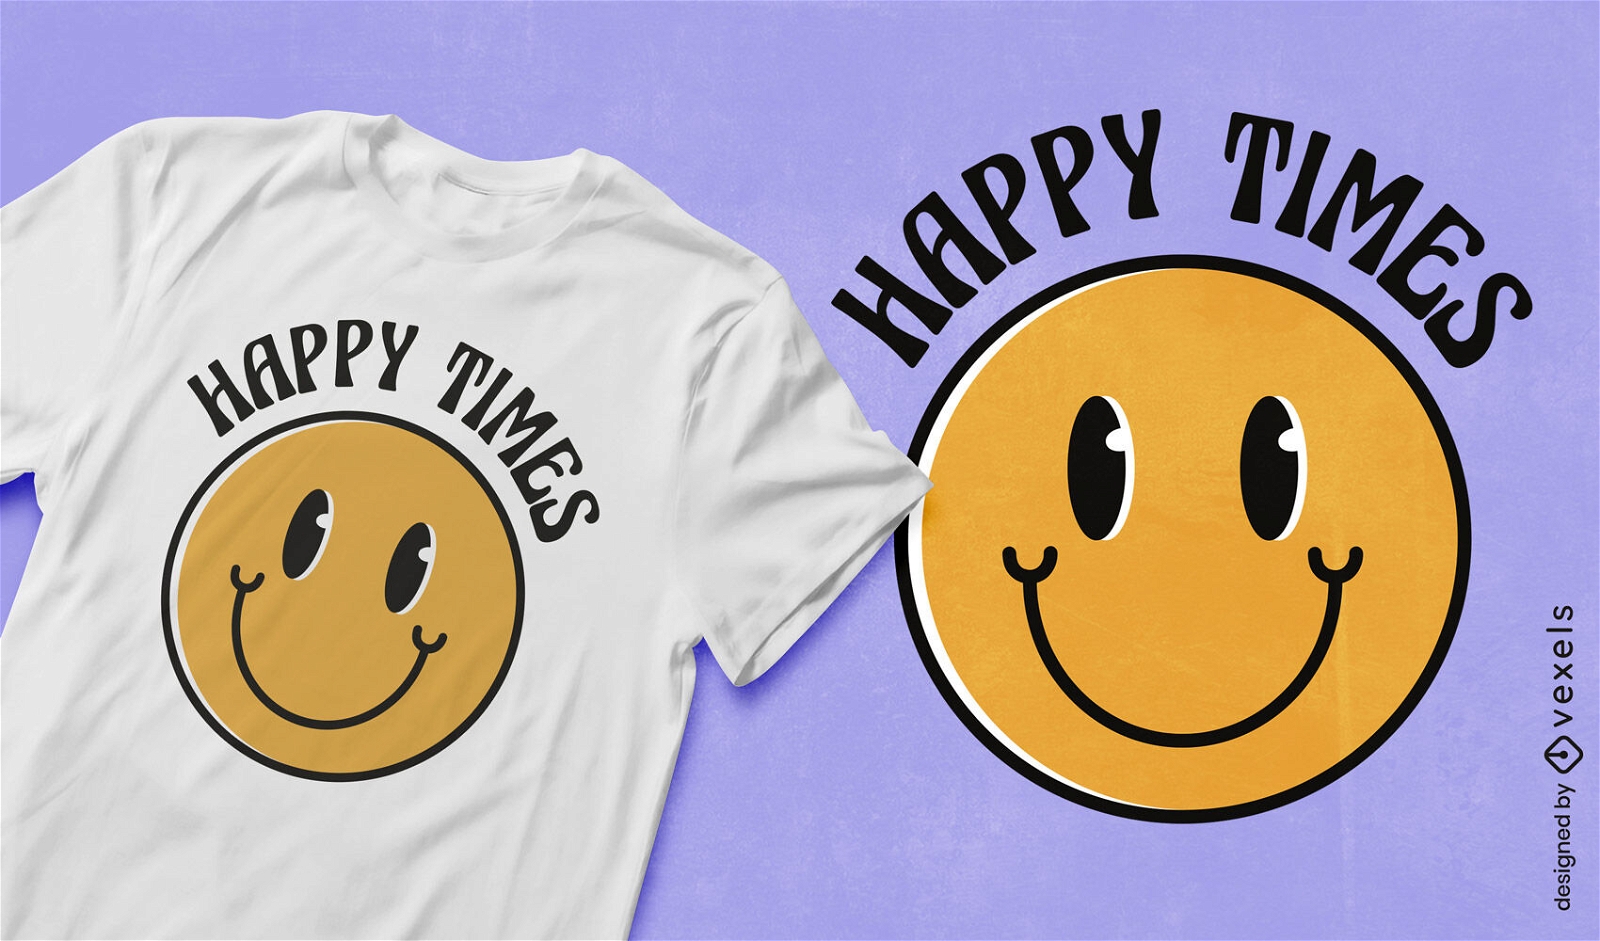 Dise?o de camiseta de smiley face happy times